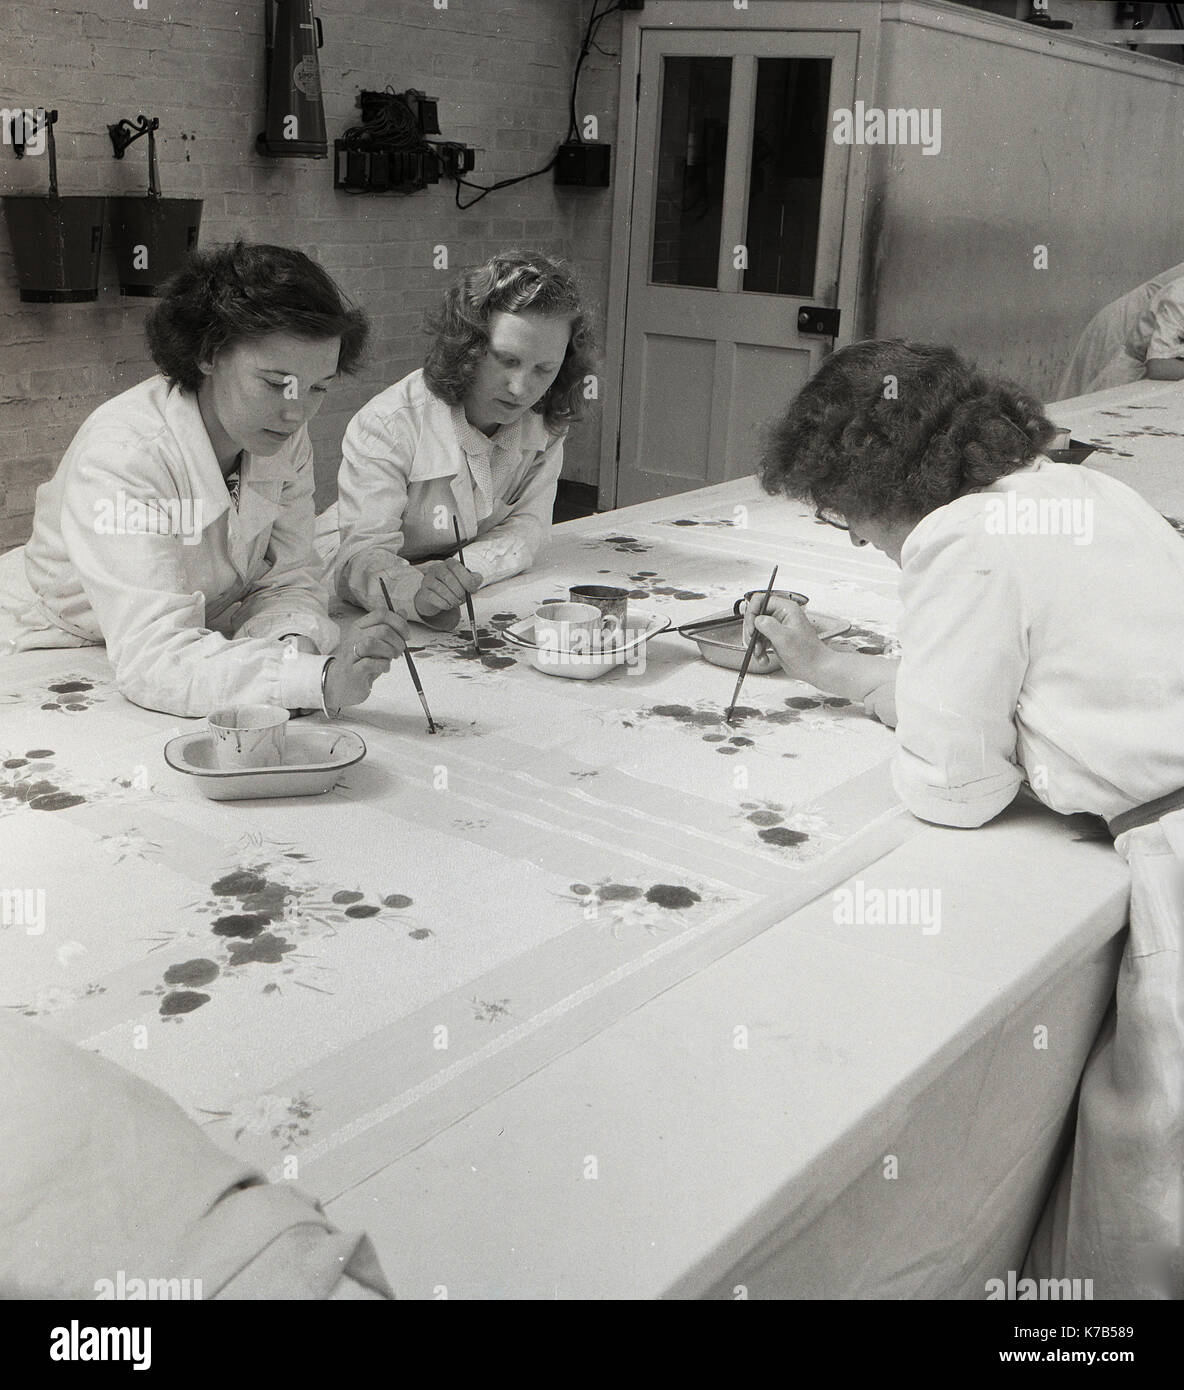 Années 1950, historique, trois femmes du nord de l'irlande peignent à la main des dessins sur le tissu de lin, un produit irlandais traditionnel, une fibre produite à partir de la plante de lin (mauvaises herbes) cultivée et récoltée dans de nombreuses parties de l'Irlande. Banque D'Images